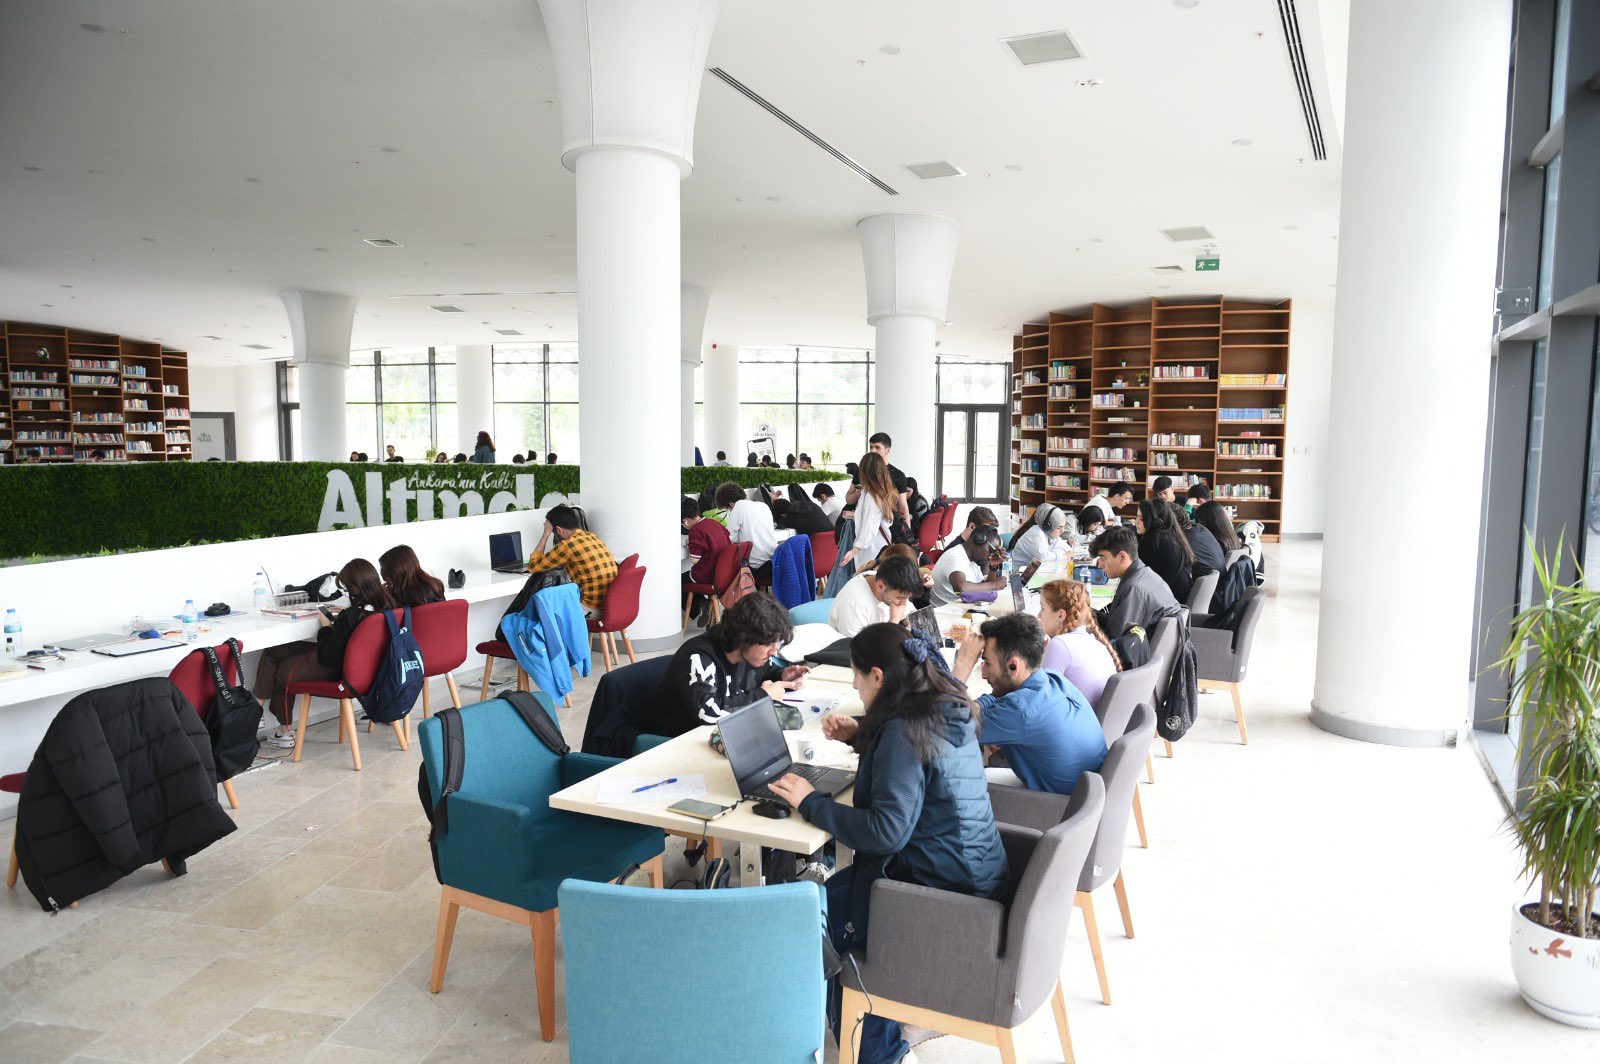 Altındağ'da gençlerin durağı kütüphane oluyor -1